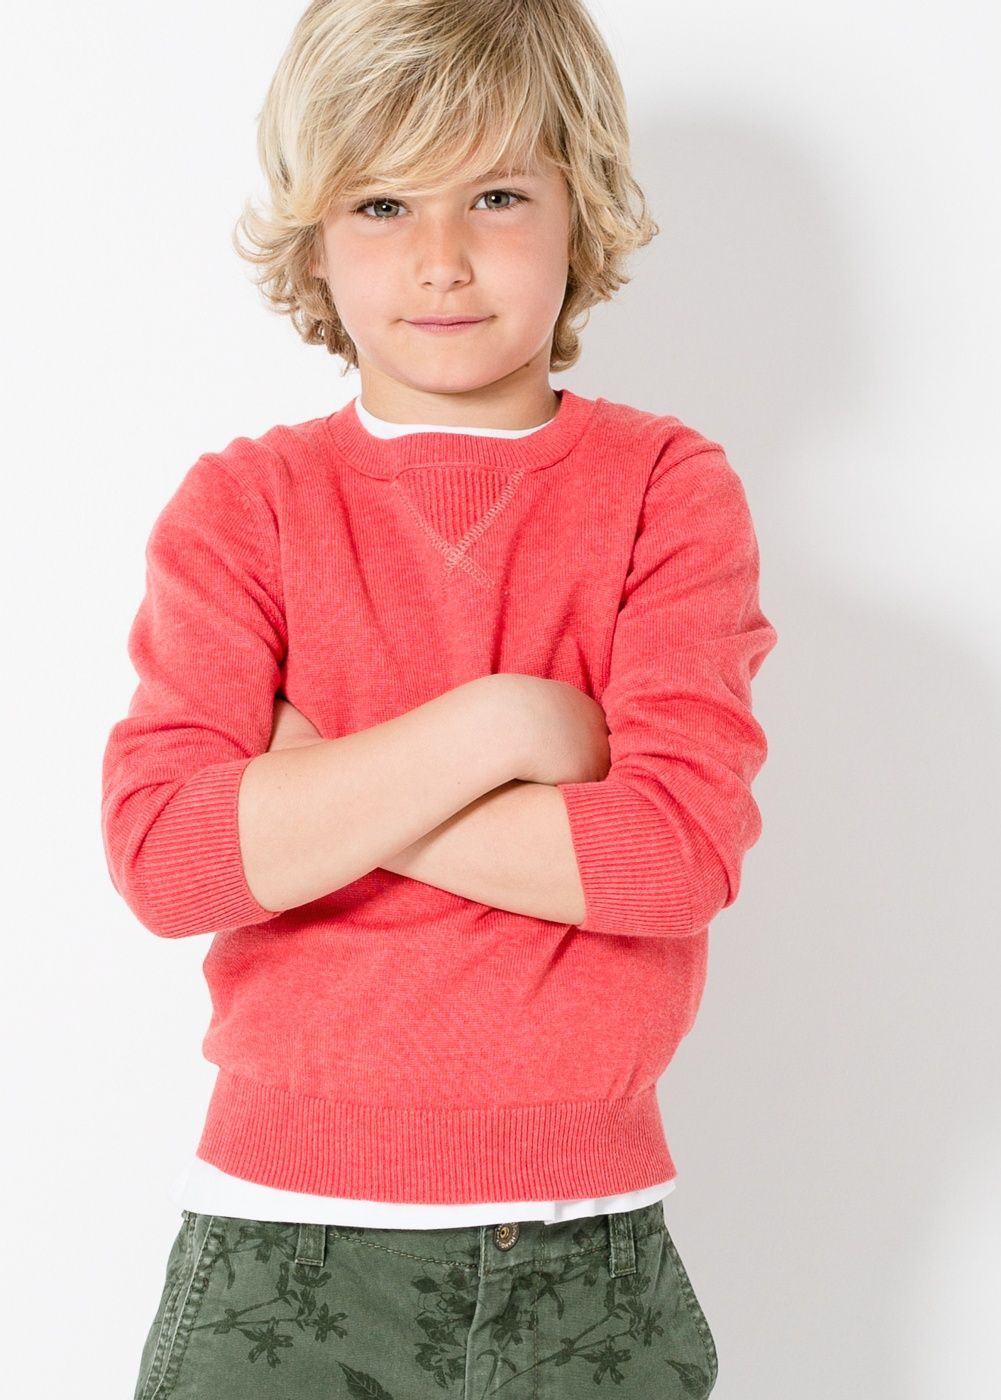 Kinder Jungen Haarschnitt
 Pullover mit ziernähten Jungen in 2019 kinder